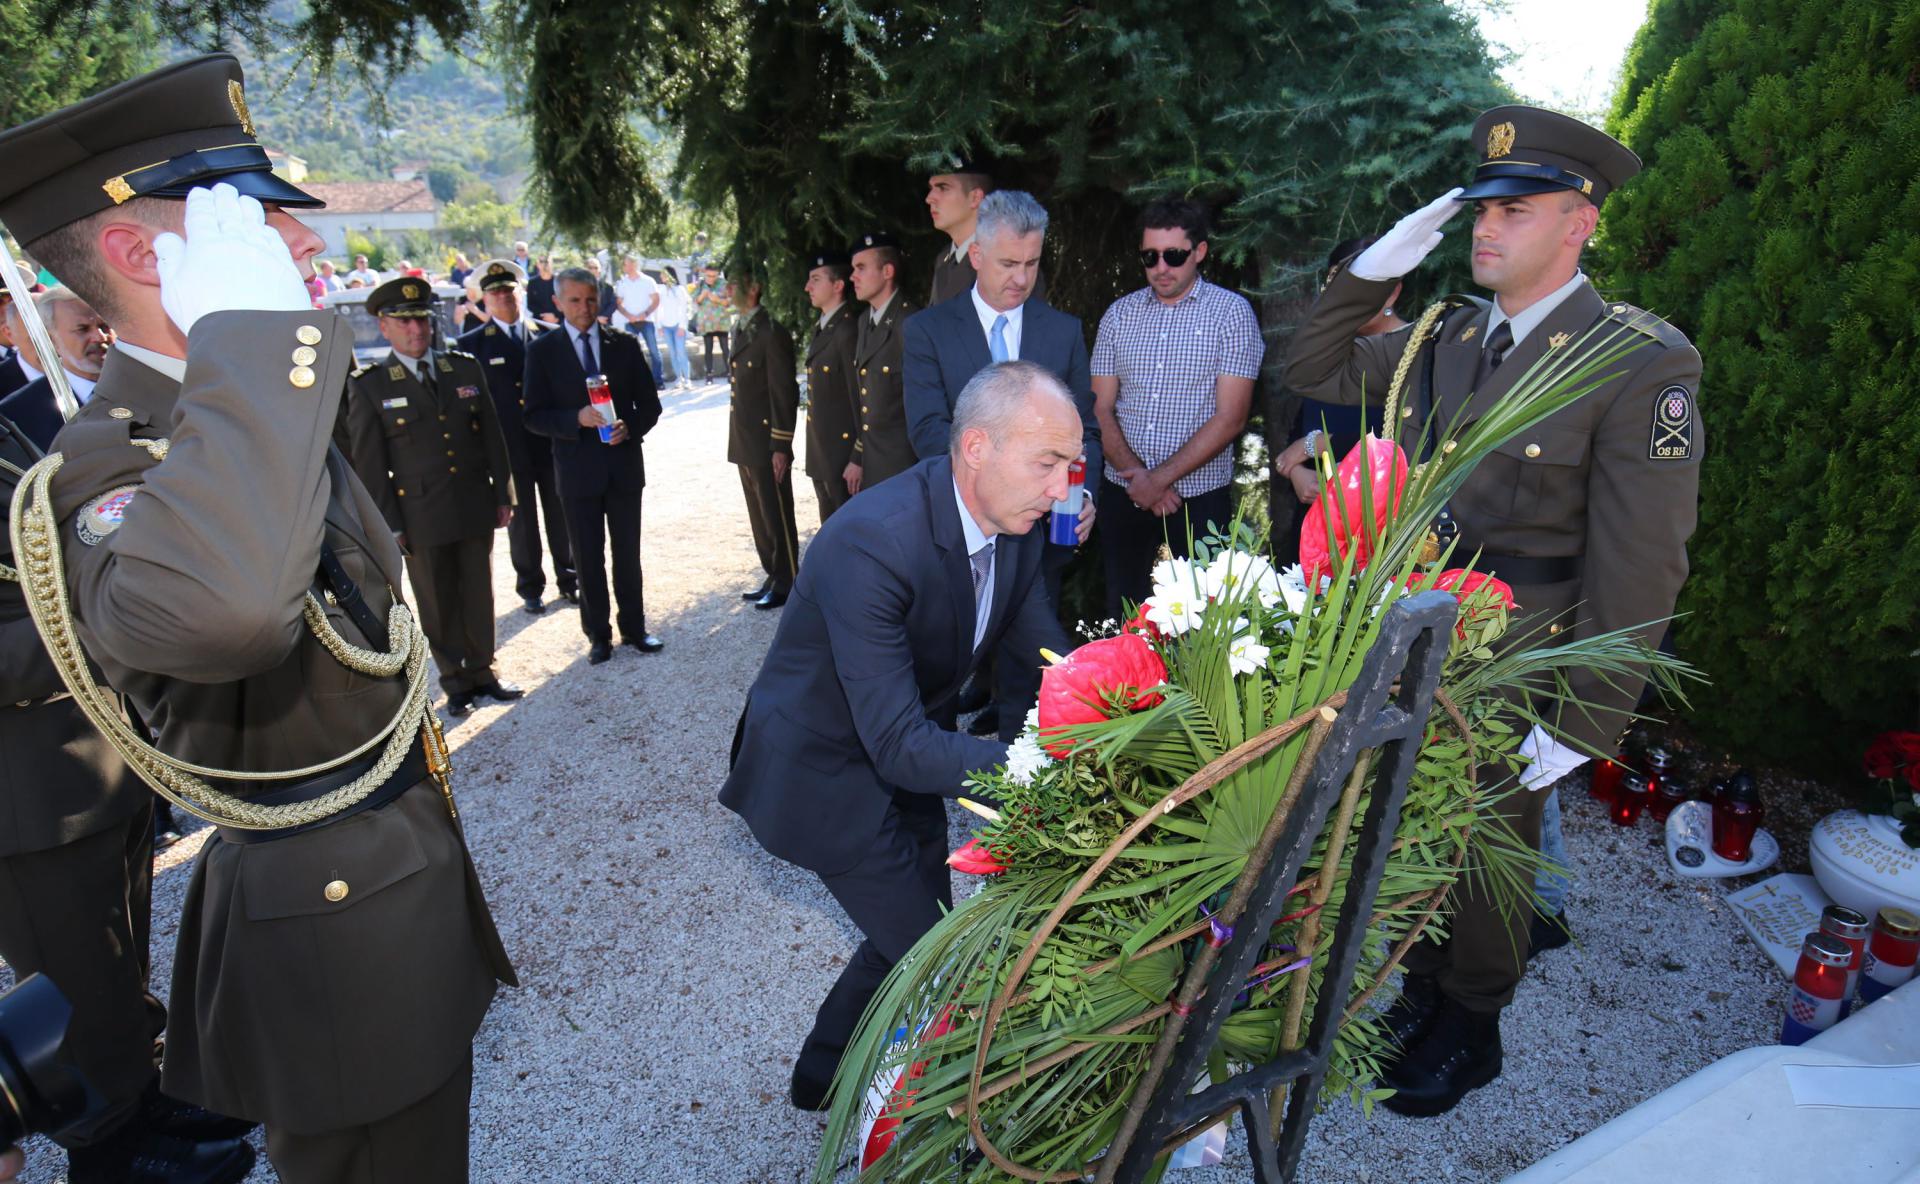 Ministar obrane Damir Krstičević položio je vijenac na posljednje Matijaševo počivalište